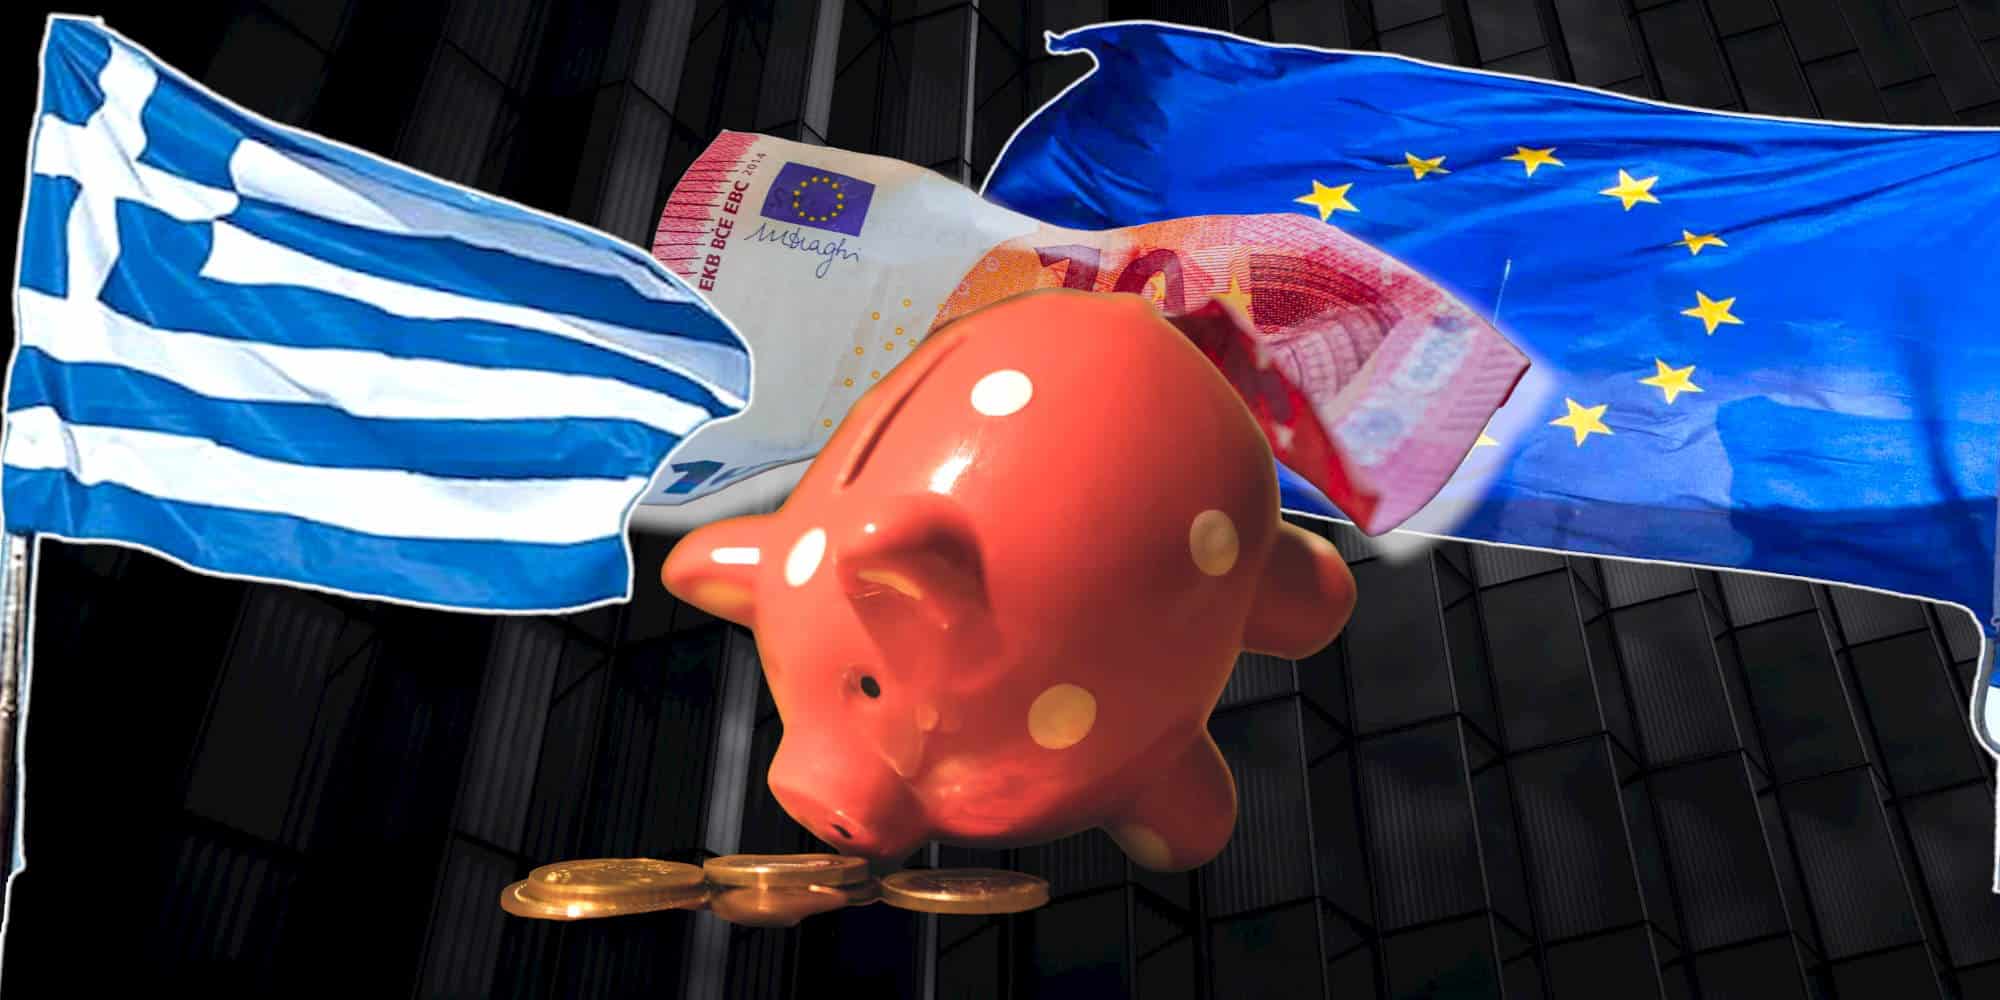 Η οικονομία στην Ευρώπη και την Ελλάδα σύμφωνα με τις προβλέψεις του ΔΝΤ